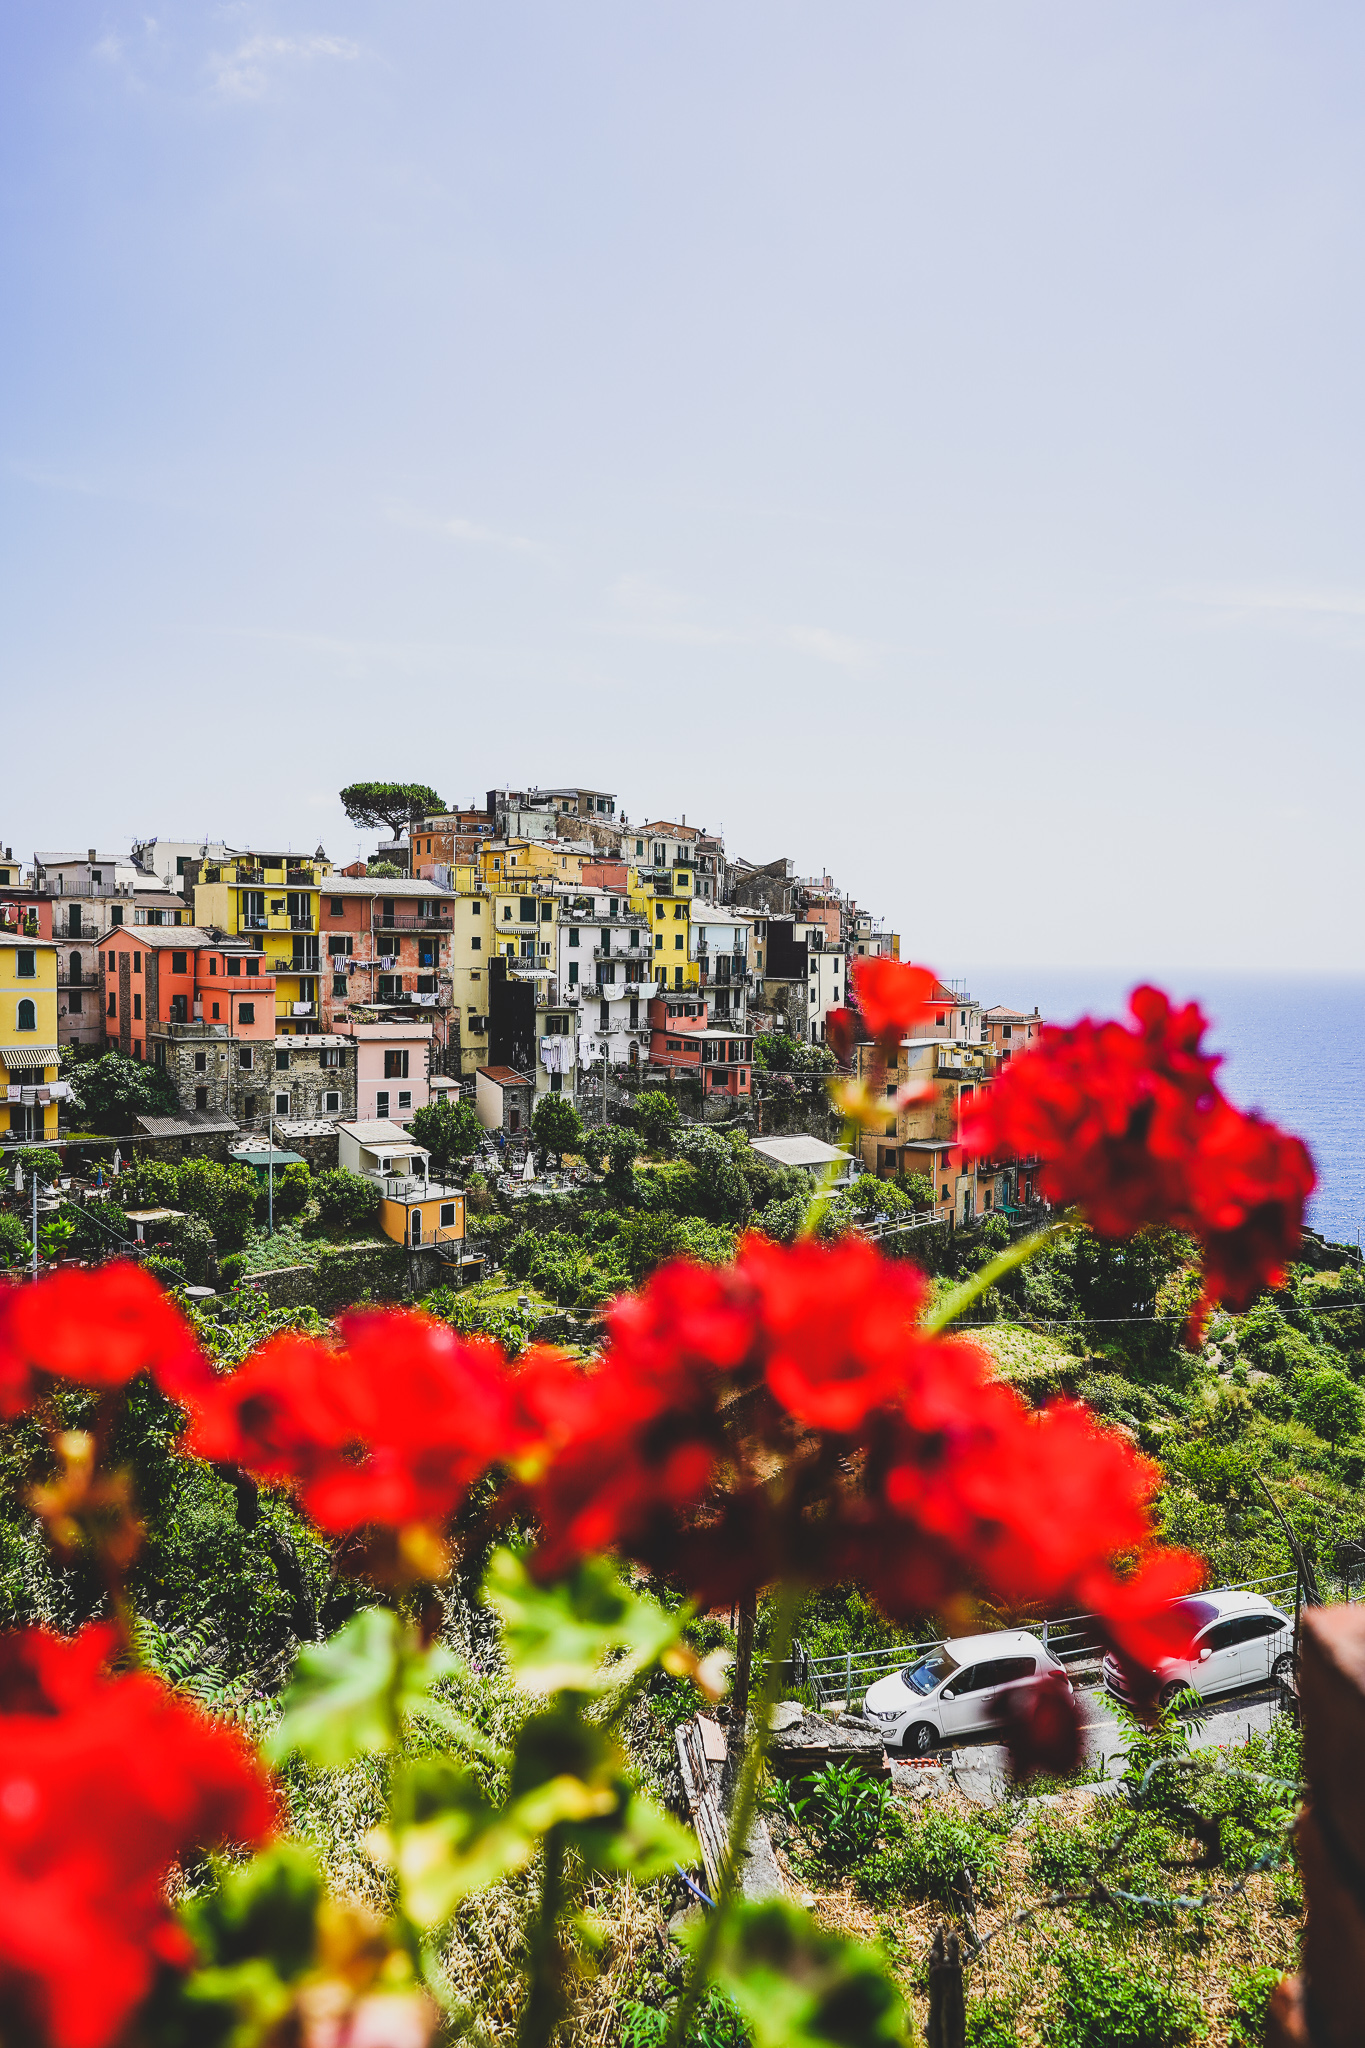 Bezoek aan Cinque Terre - handige tips en informatie